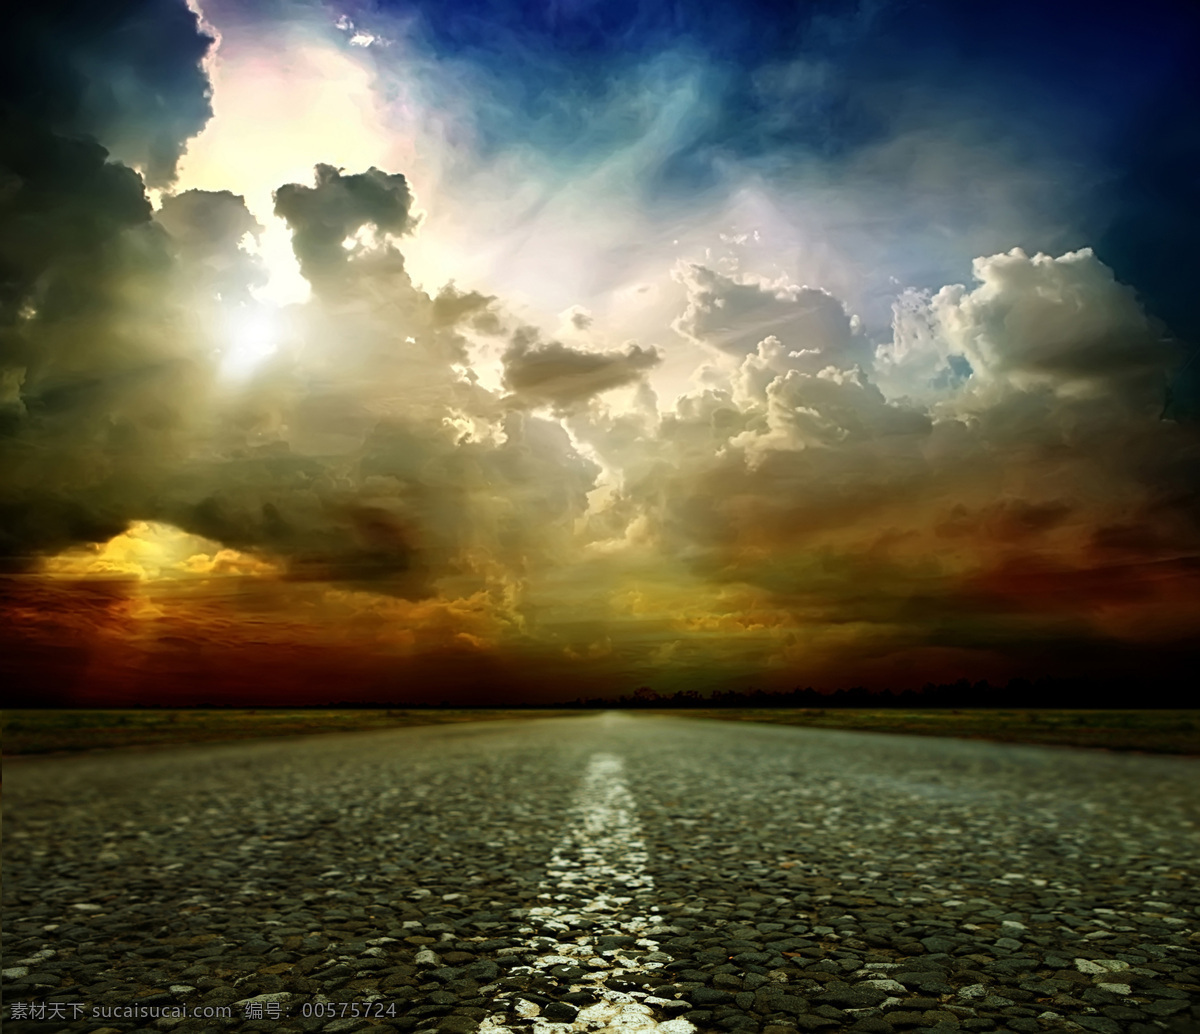 道路 天空 背景 素材图片 天气 交通 云 自然风光 环境 底纹背景 公路 公路图片 环境家居